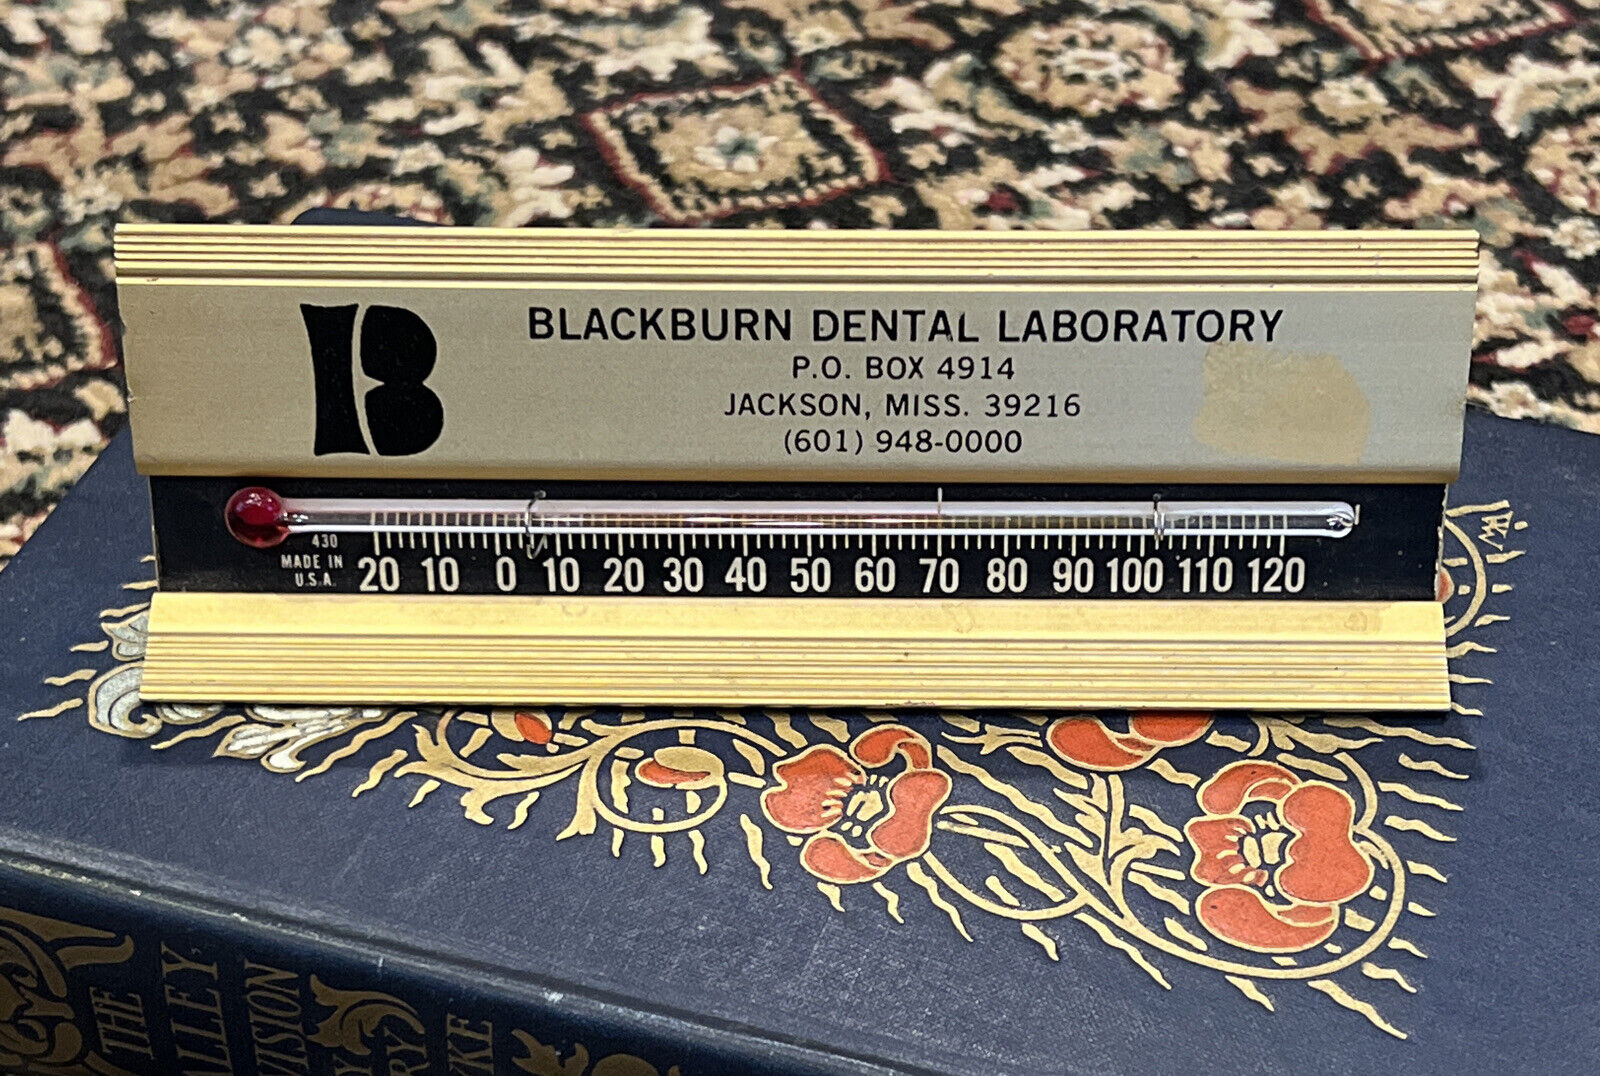 Jackson Mississippi Blackburn Dental Medical Laboratory Desk Thermometer Works